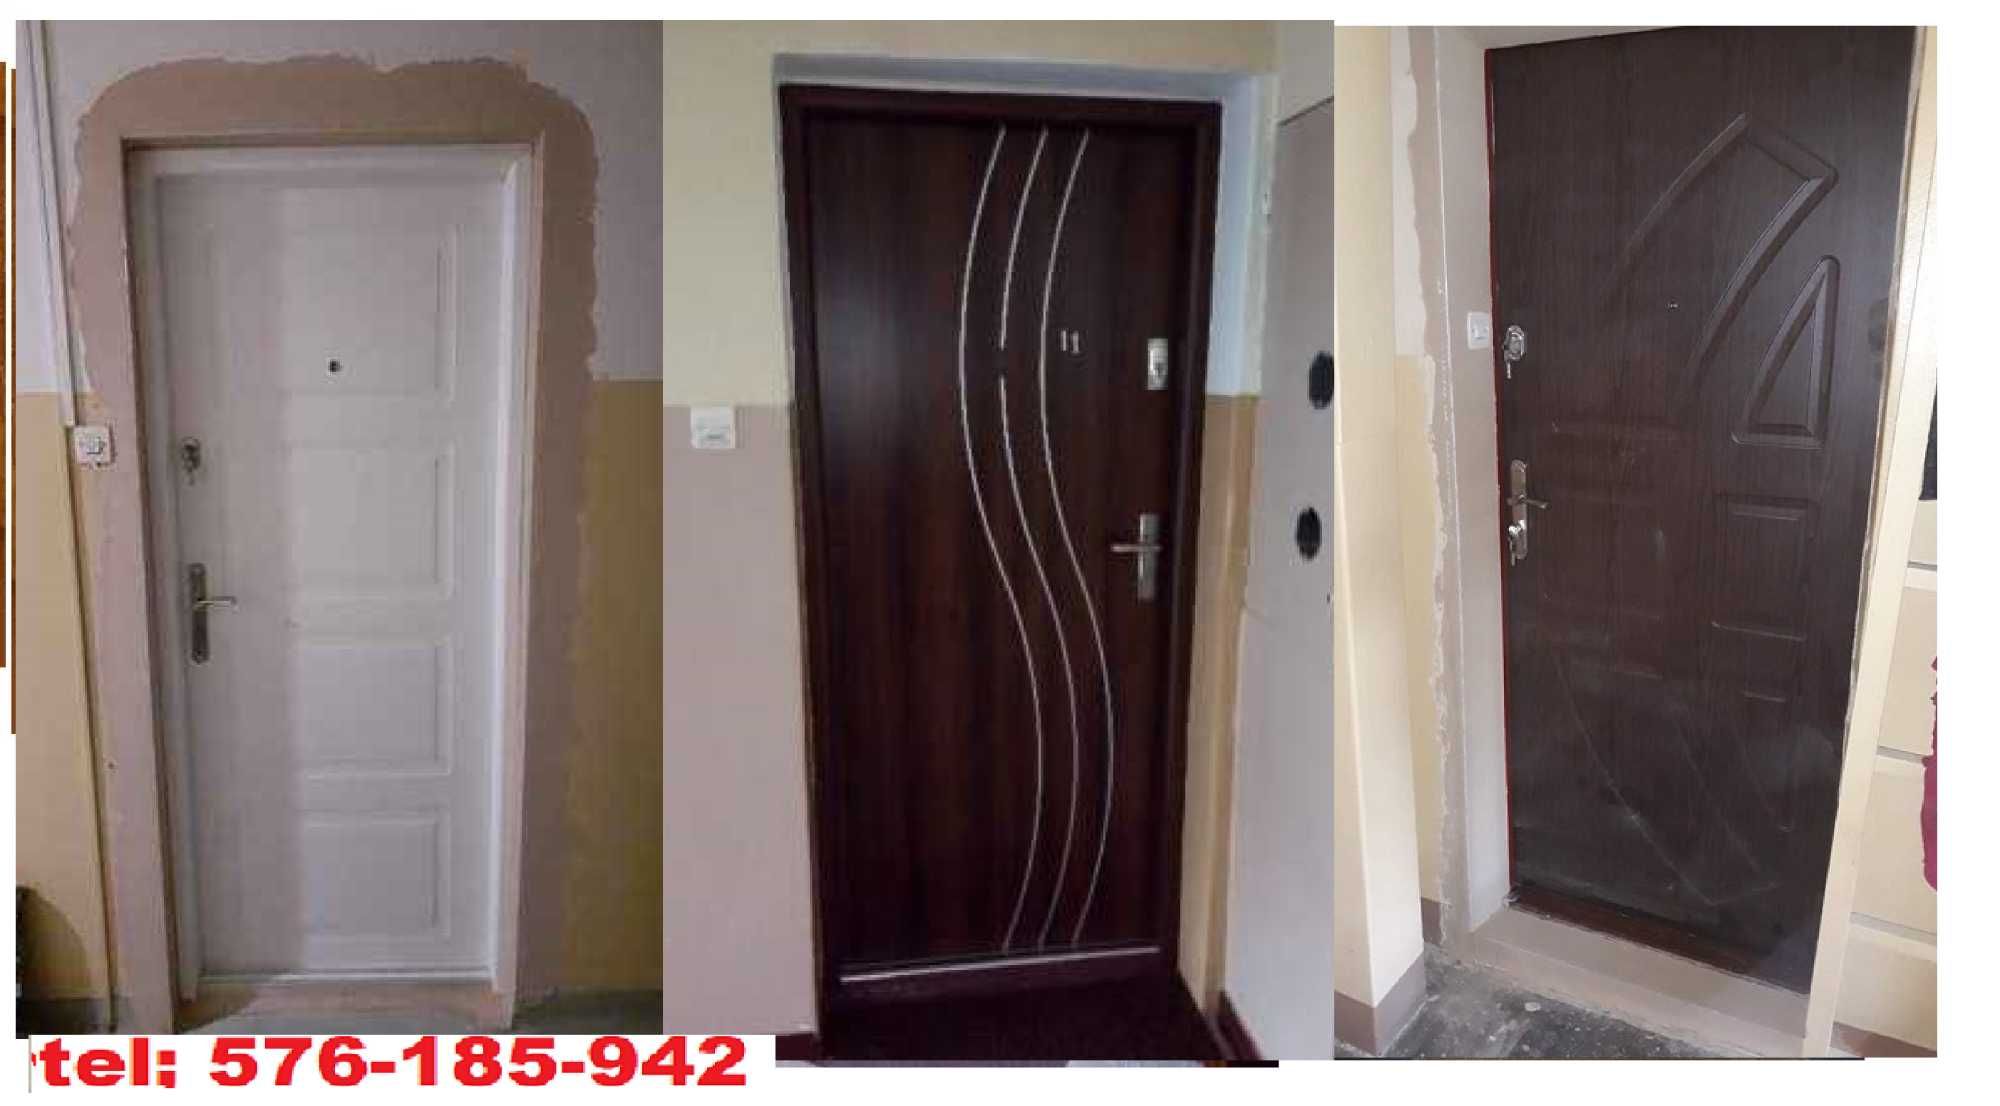 Drzwi ZEWNĘTRZNE,WEJŚCIOWE z montażem , drewniane ocieplone WYCISZONE